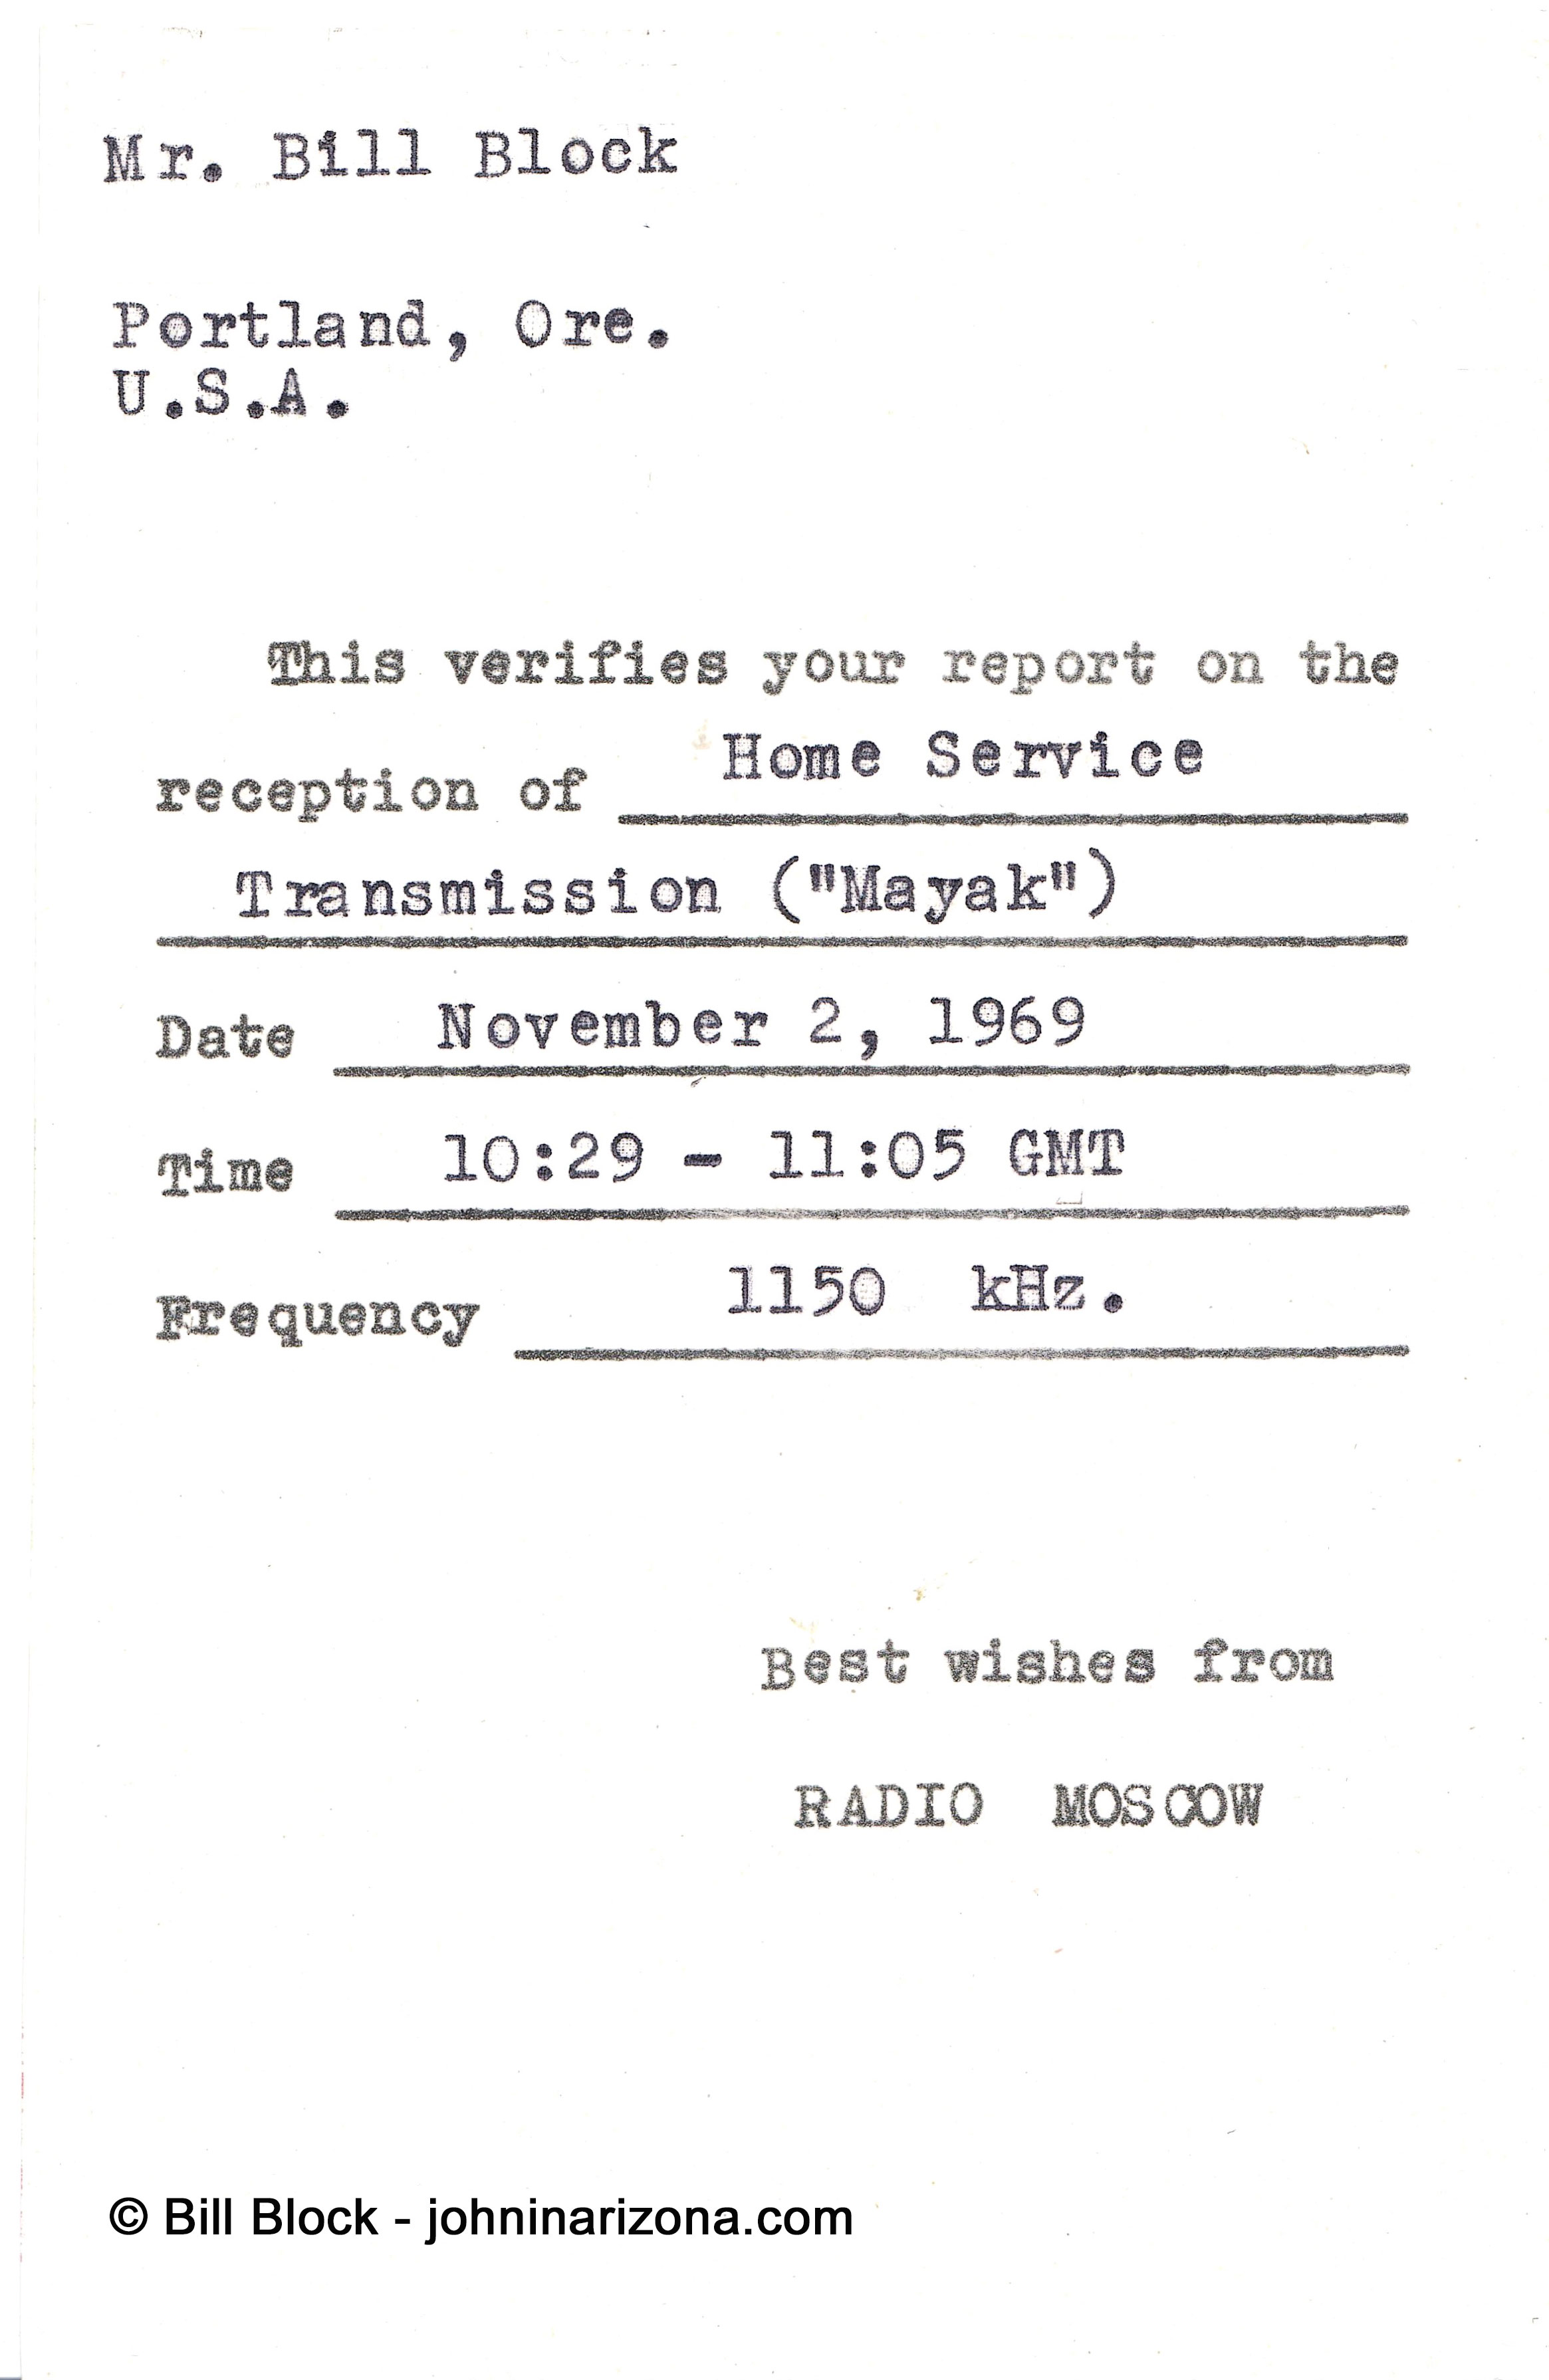 Radio Moscow 1150